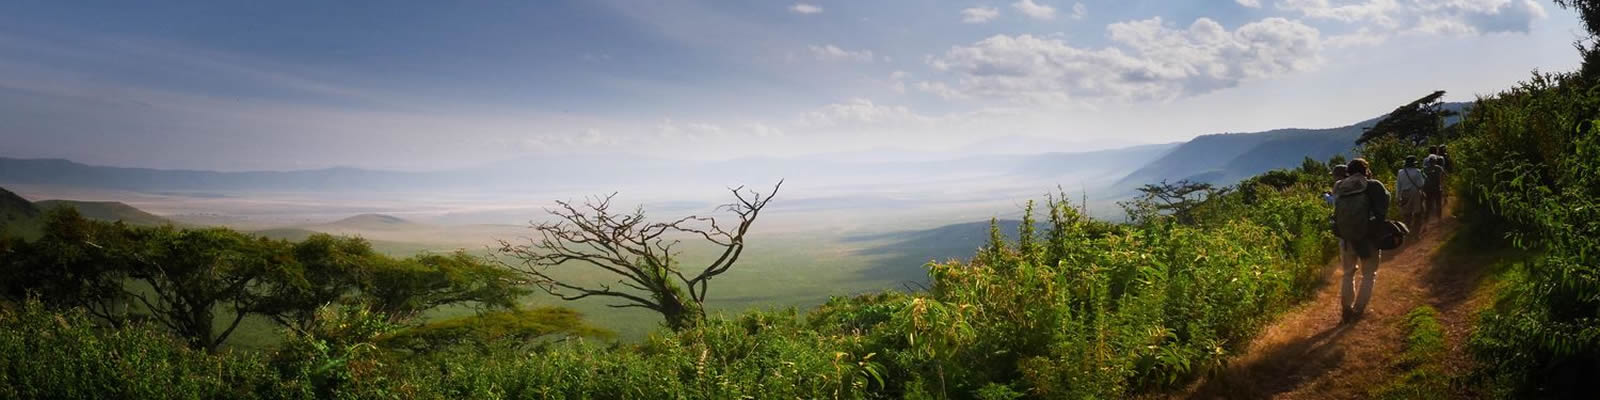 7 Days Ngorongoro Highlands Trekking